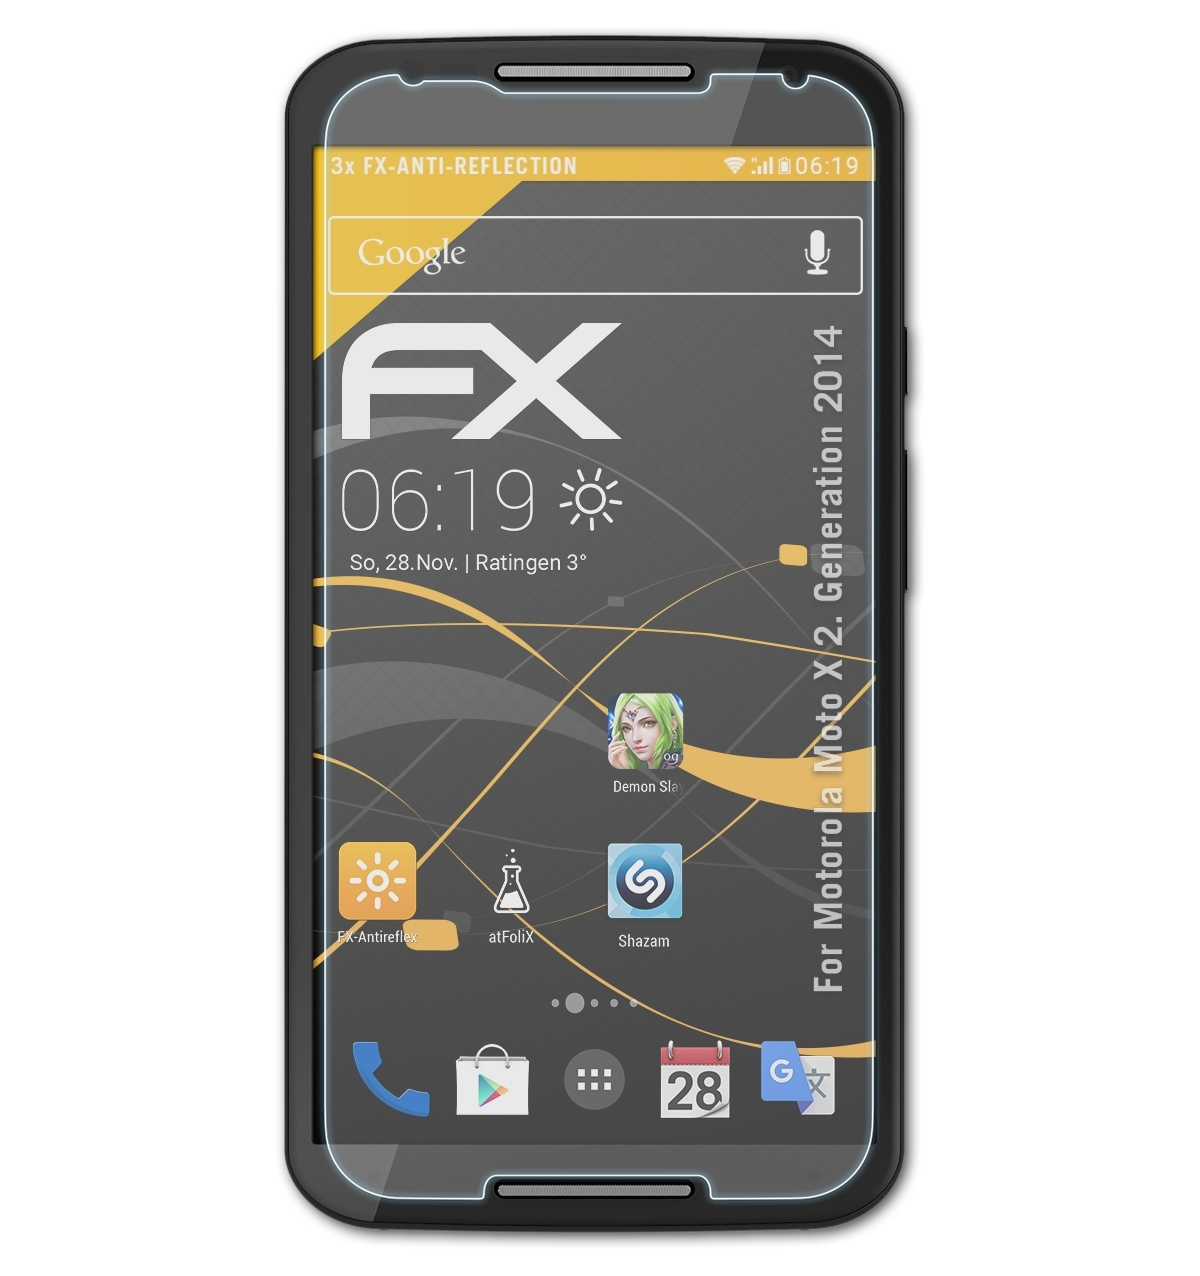 2014)) Moto ATFOLIX Generation FX-Antireflex 3x X Motorola (2. Displayschutz(für